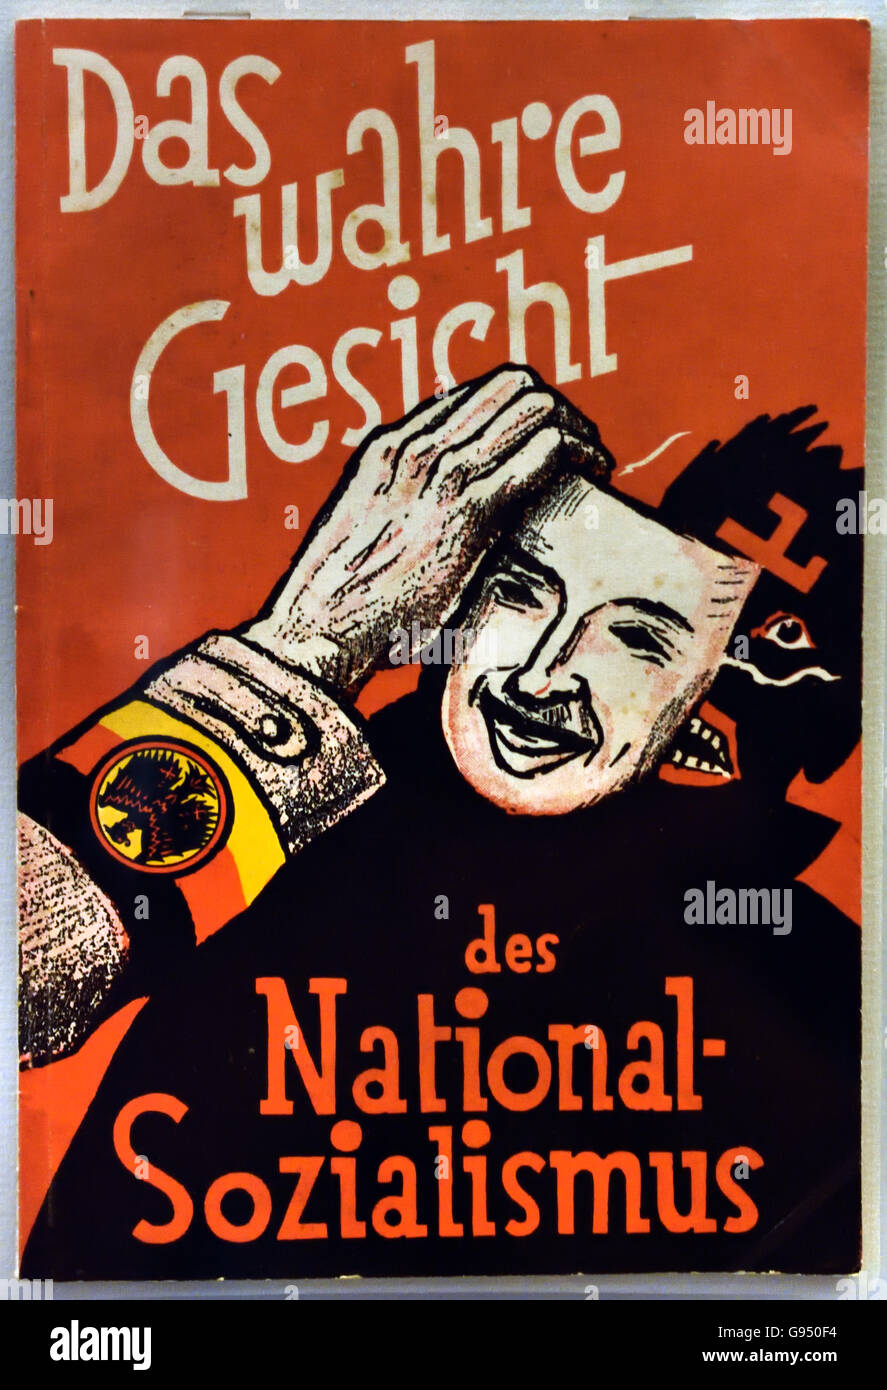 Das Wahre Gesicht des Nations Sozialismus - le vrai visage de la National-socialisme Otto Hippisme 1874-1937 Berlin Allemagne nazie Banque D'Images